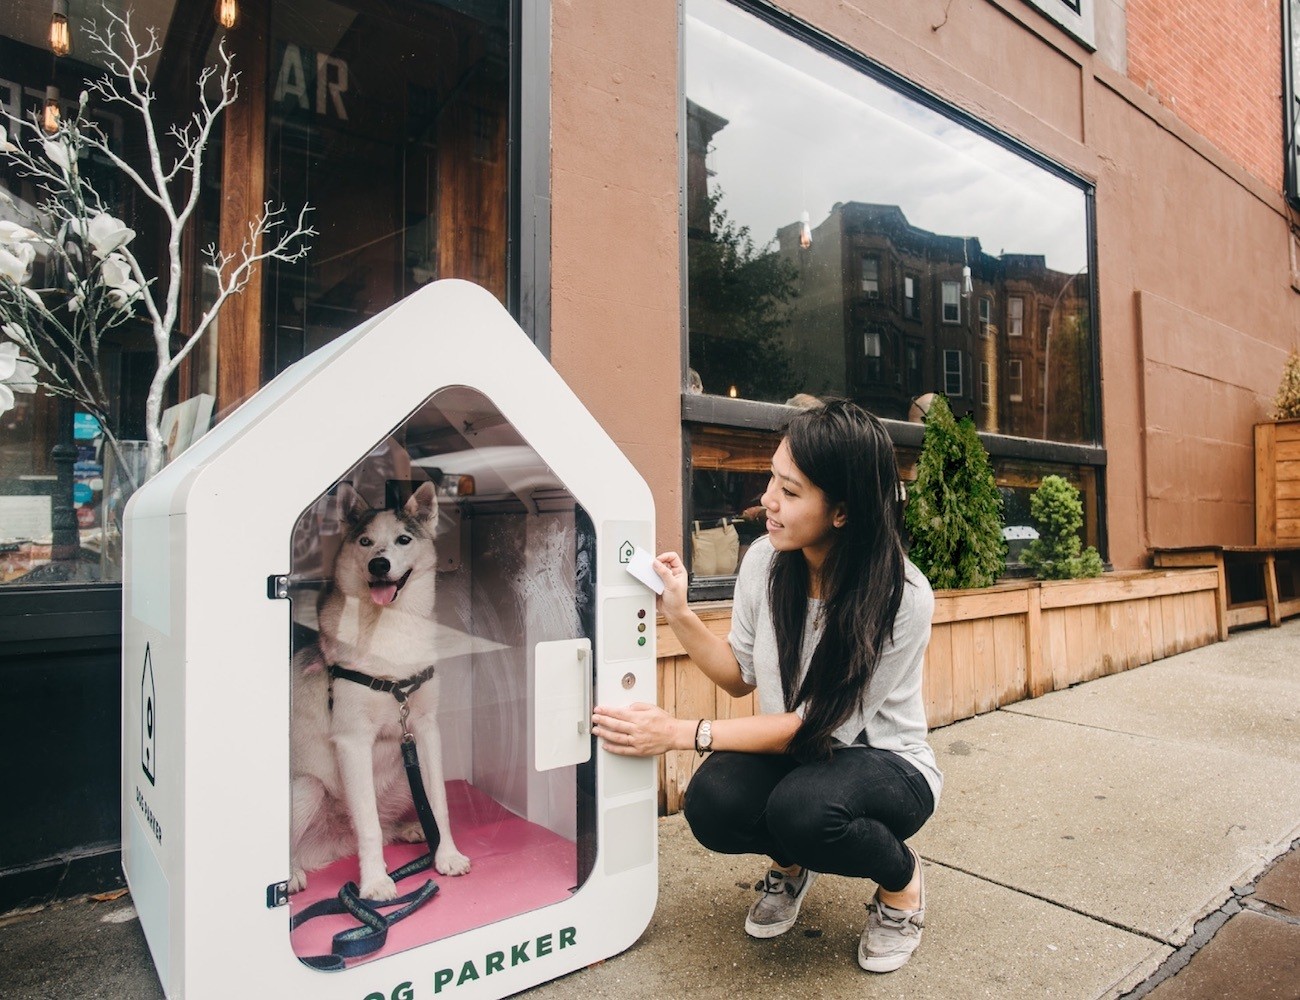 Dog Parker – Smart Dog Houses